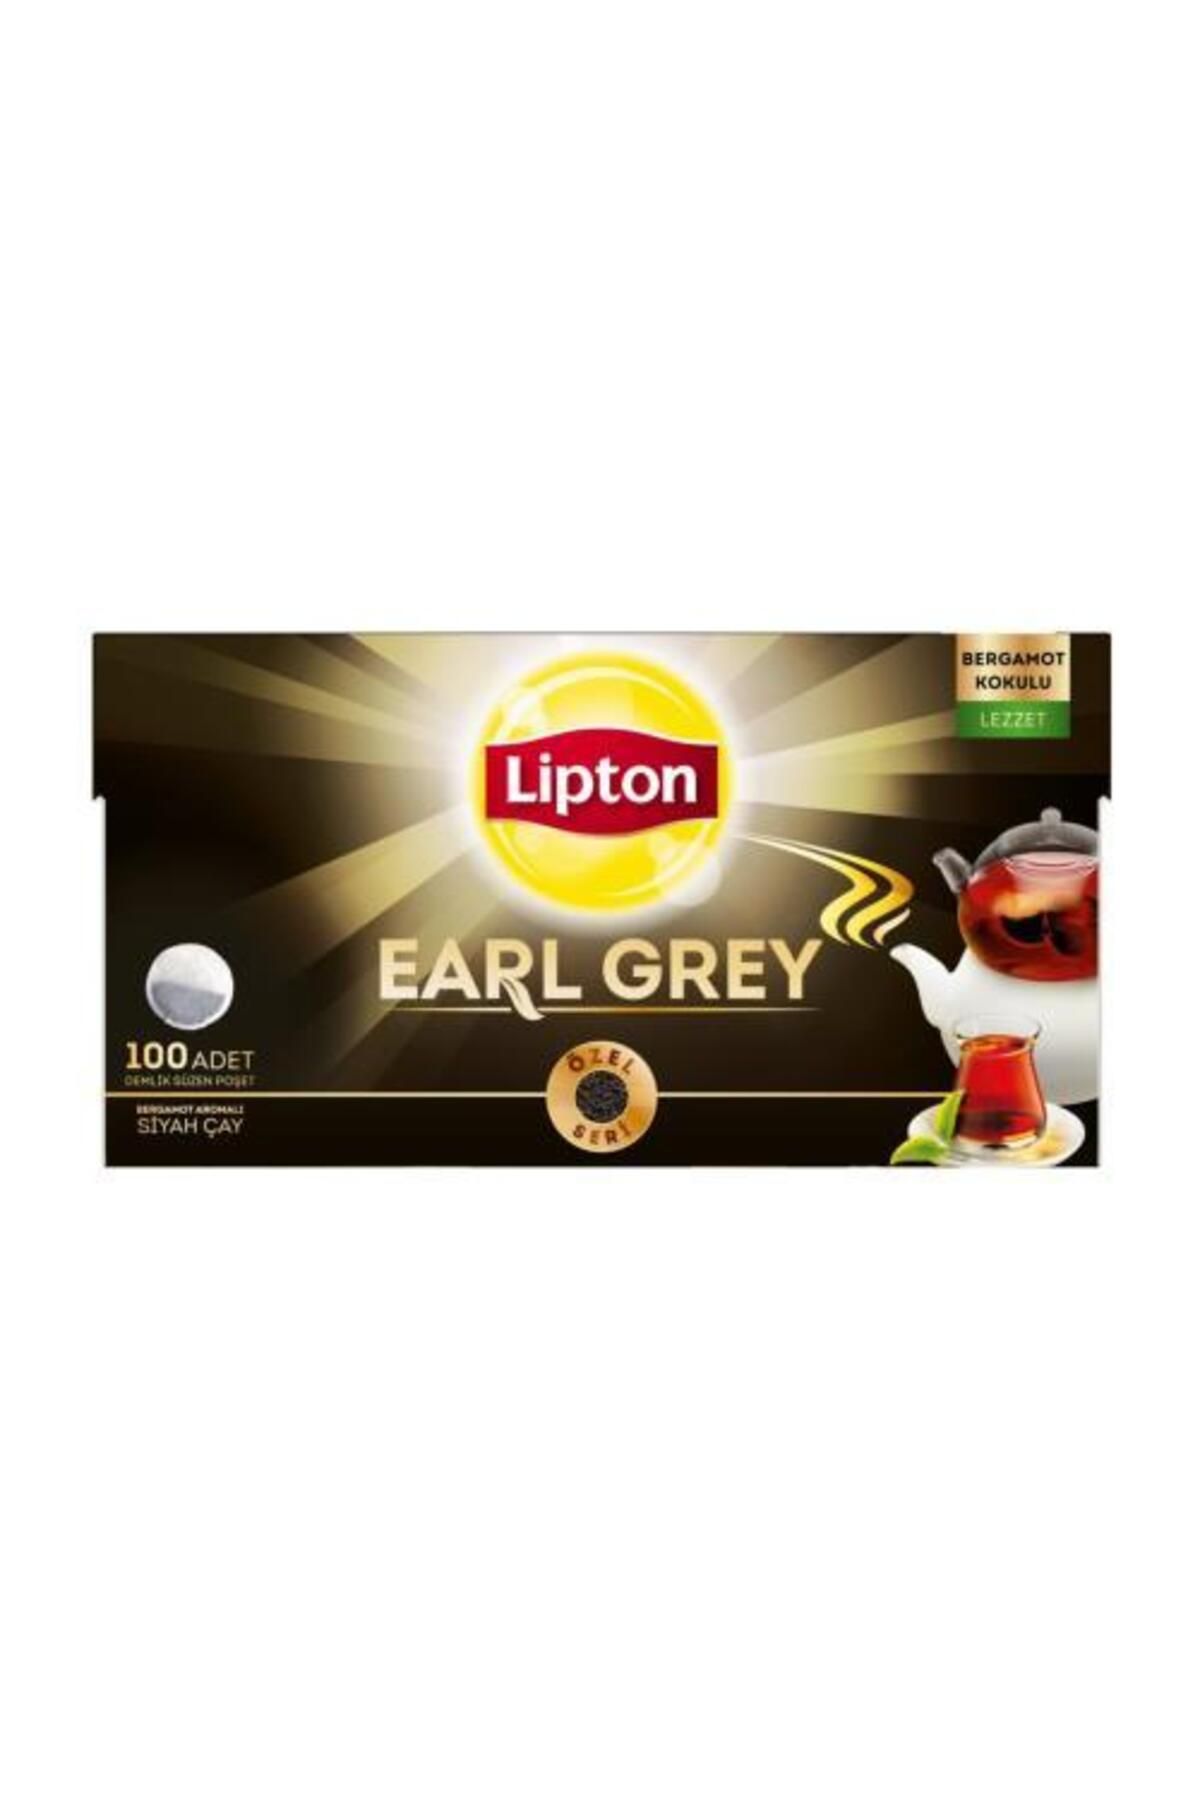 Lipton Earl Grey Demlik Poşet Çay 100lü 3 Adet